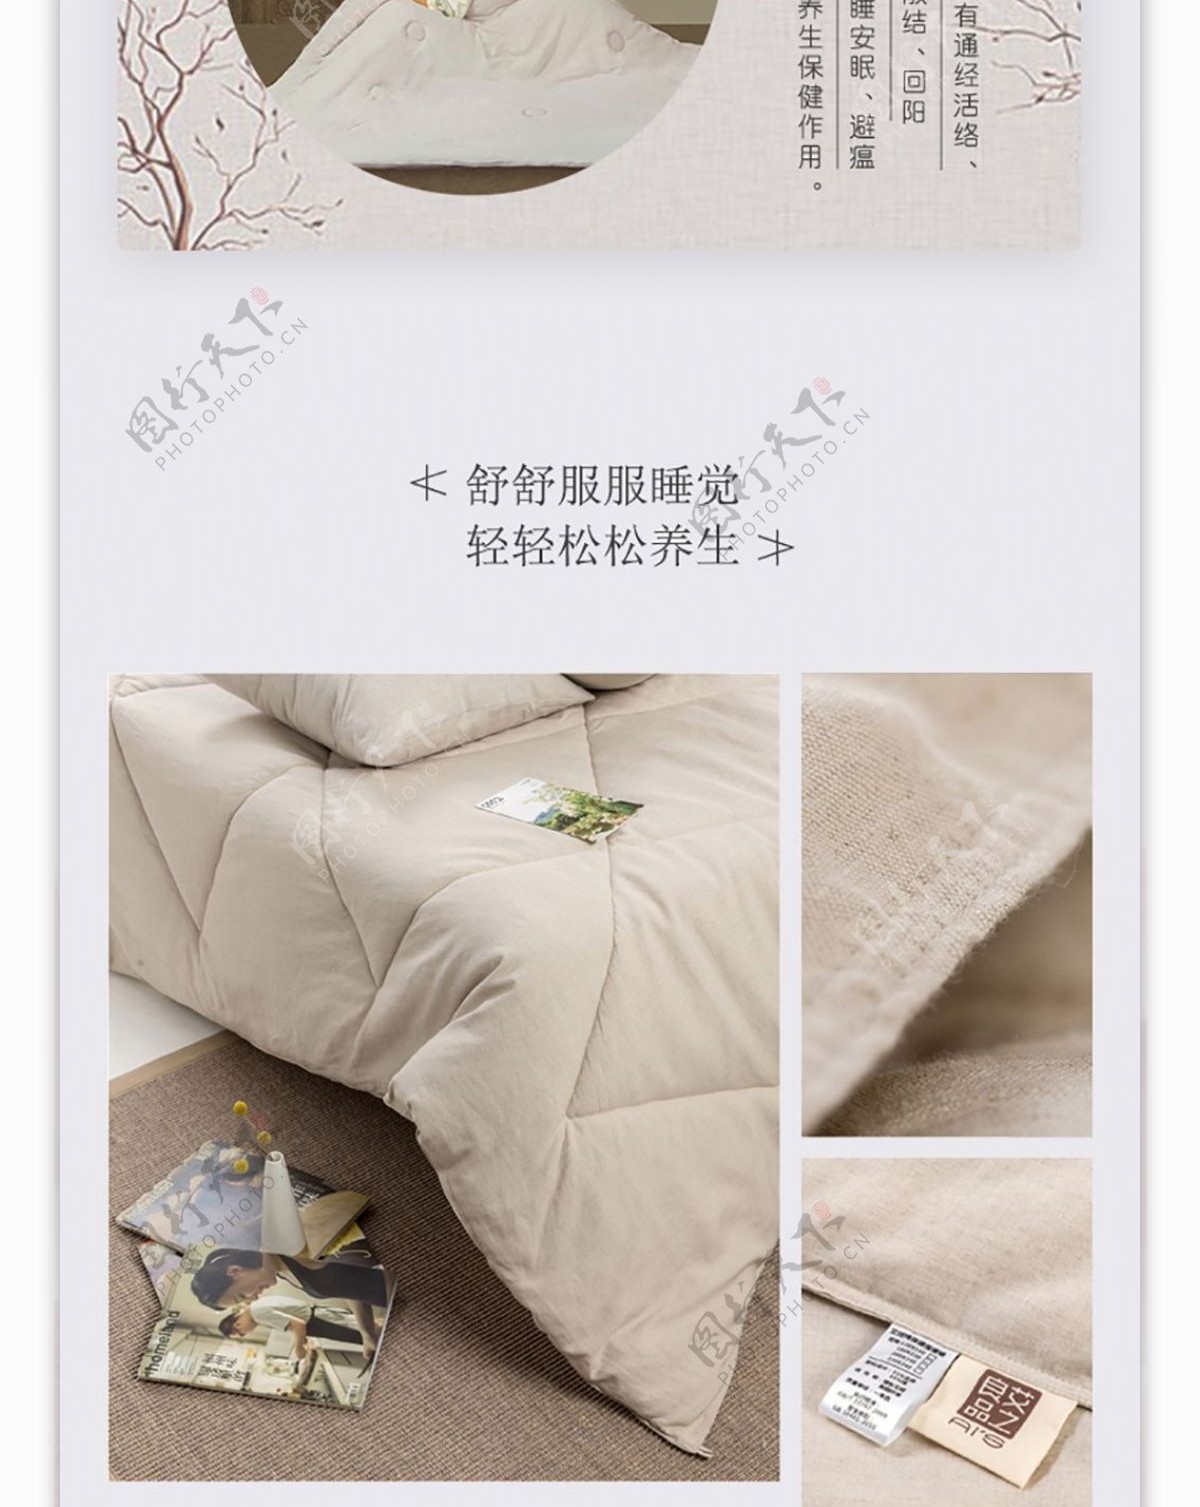 中式风格棉袄宣传页详情页家居用品